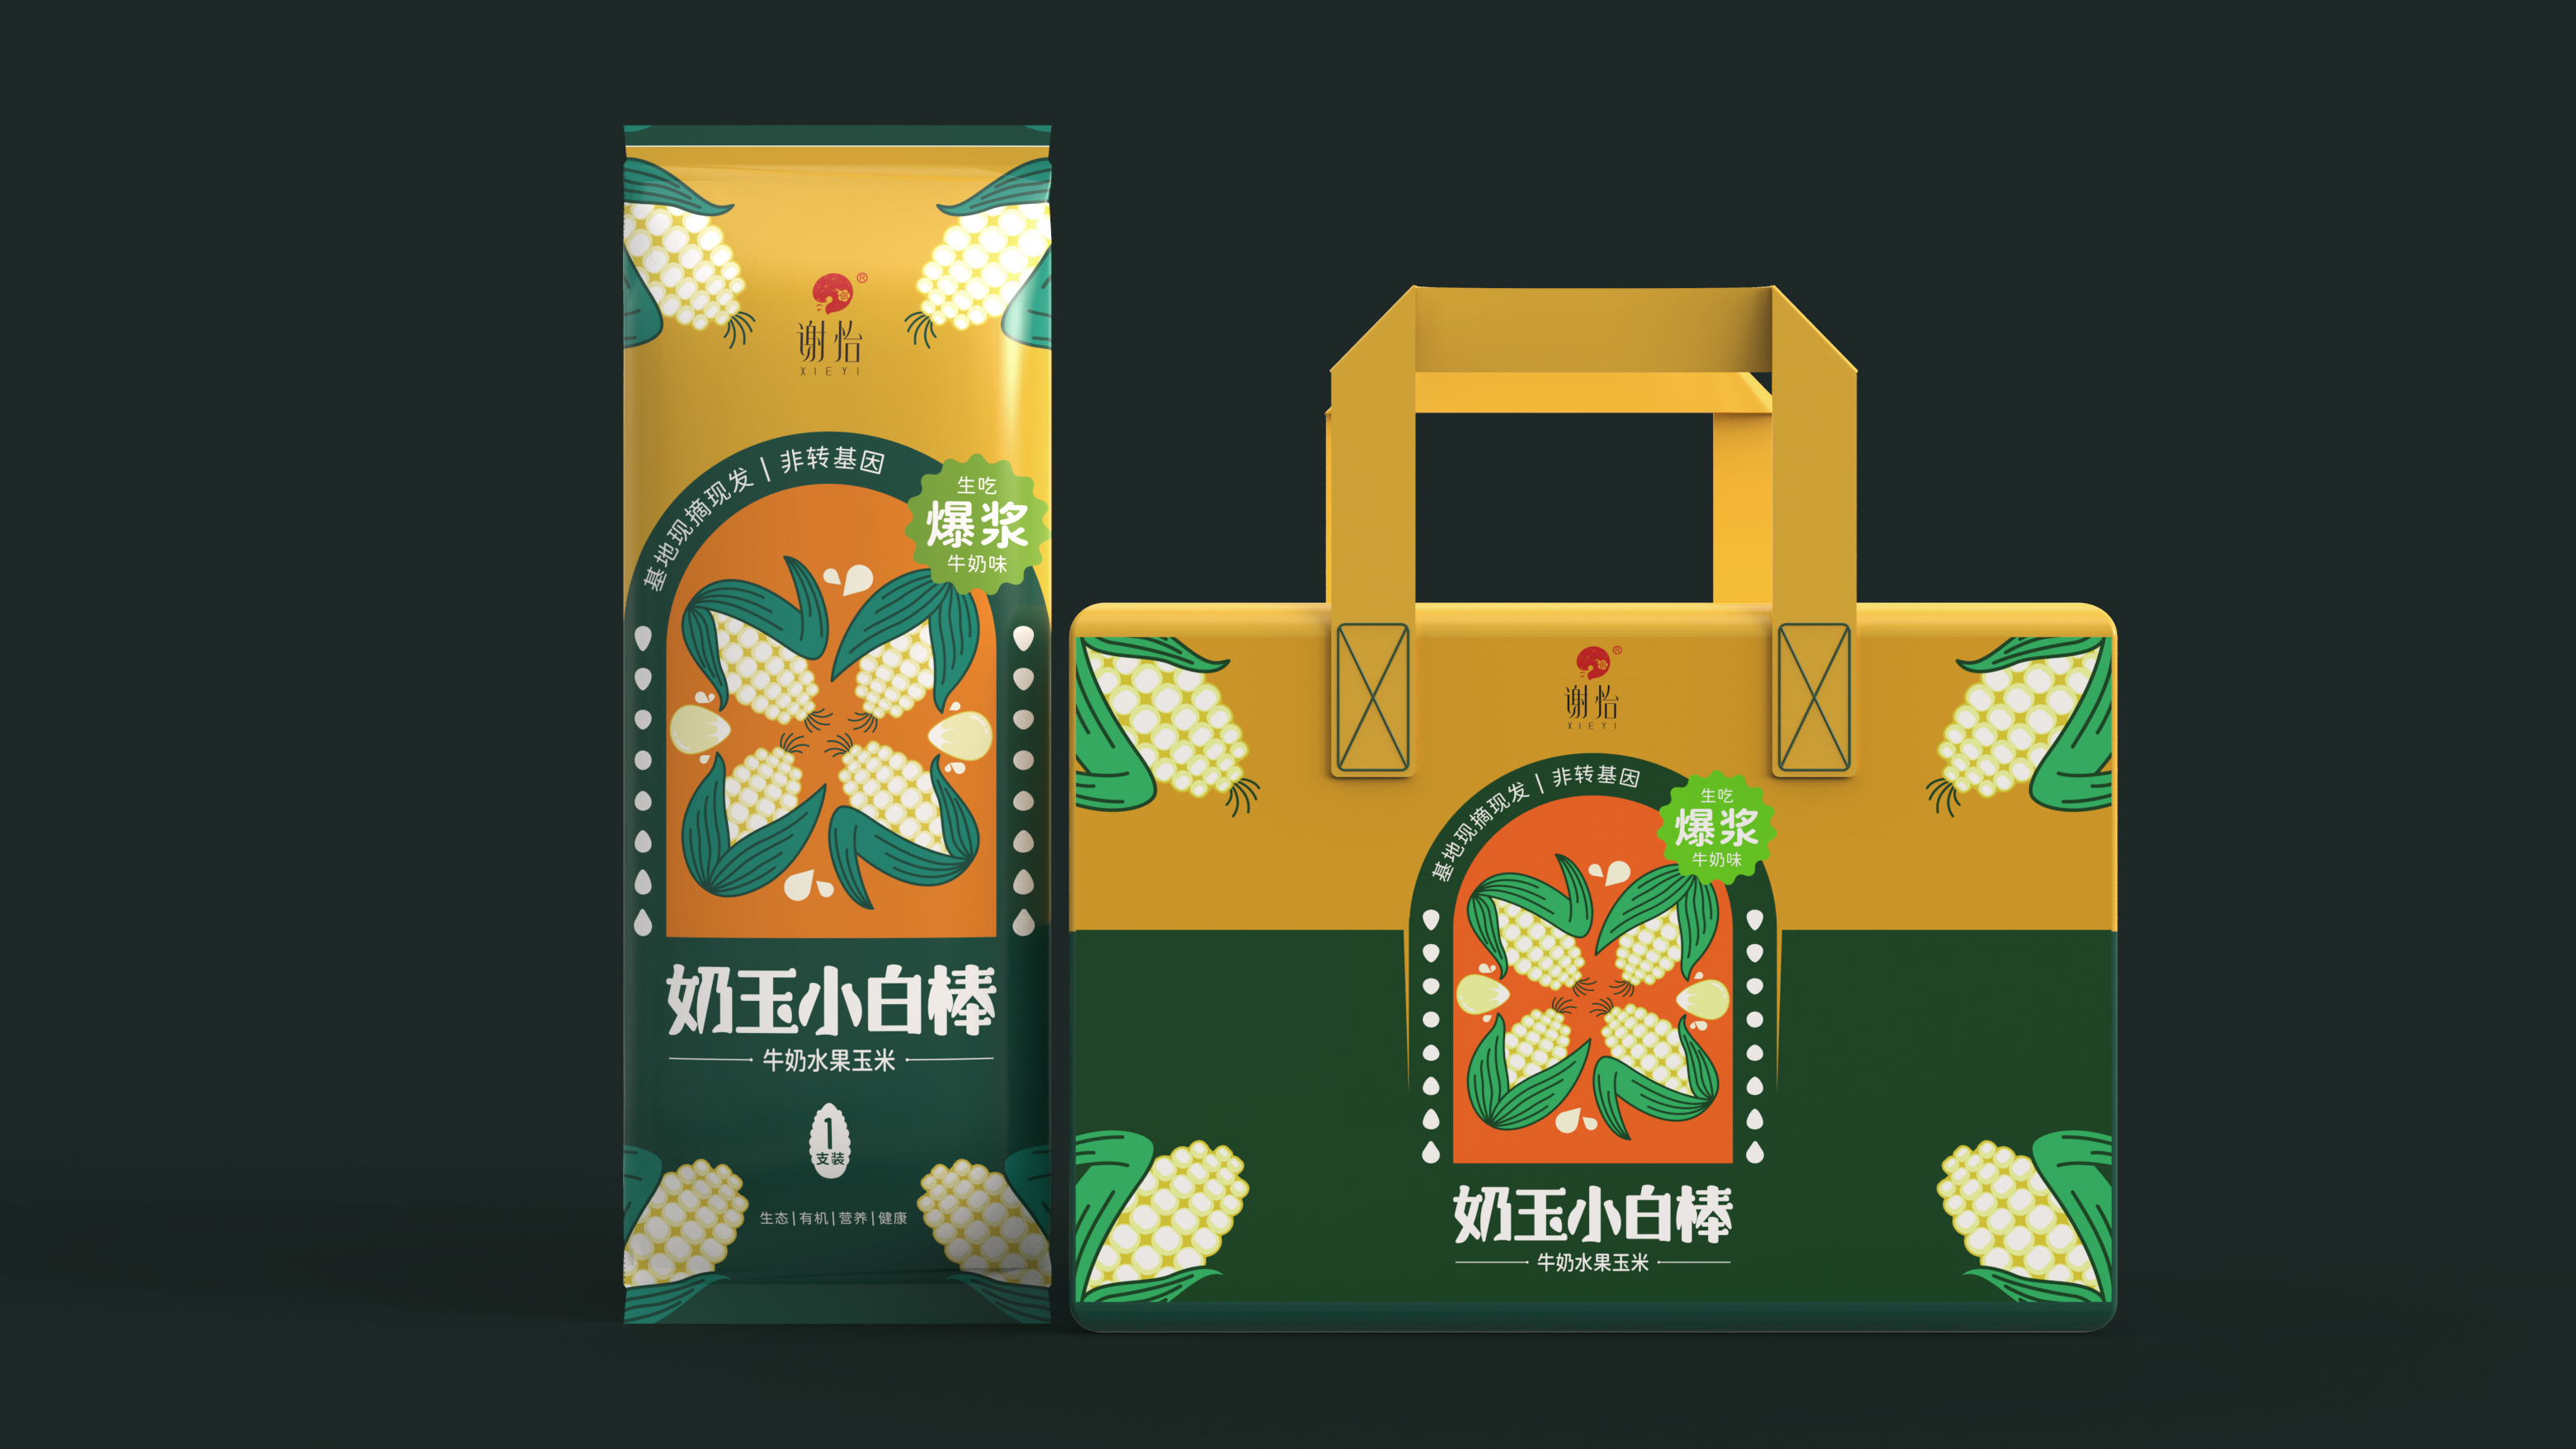 水果玉米和鸡头米包装设计 | 原创 插画